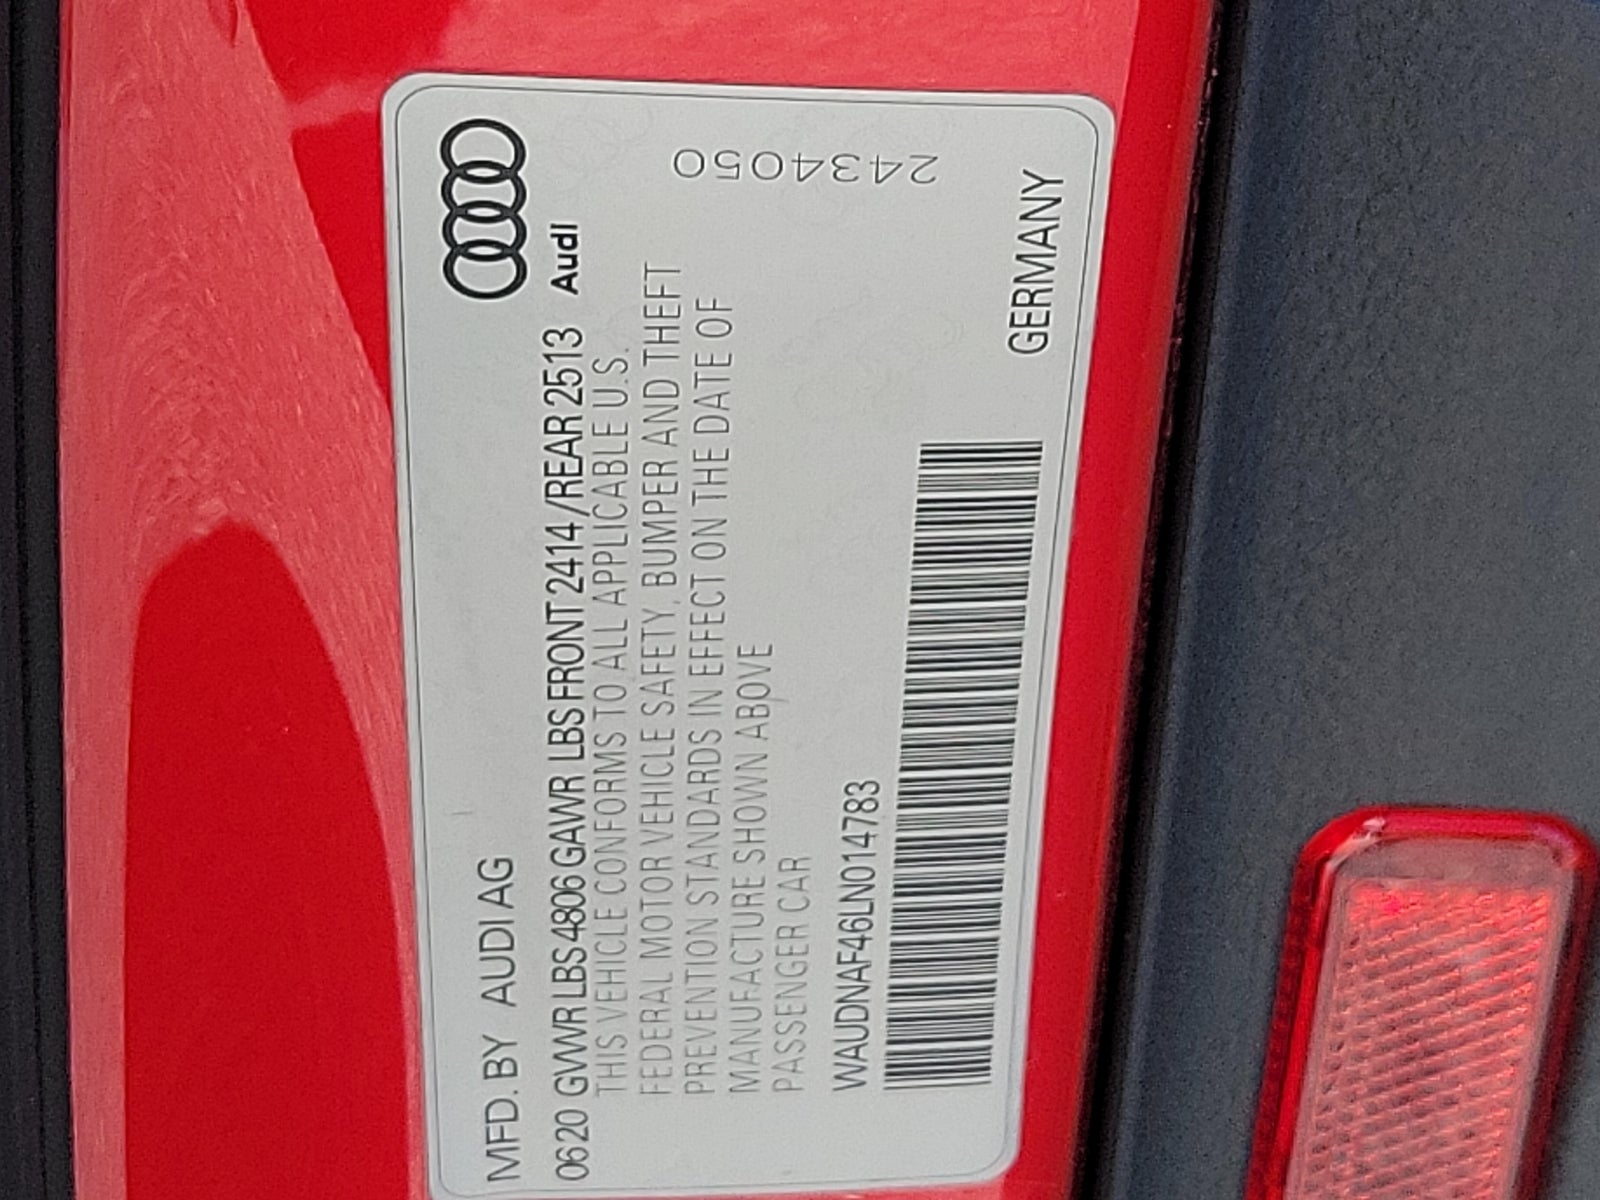 2020 Audi A4 45 Premium quattro